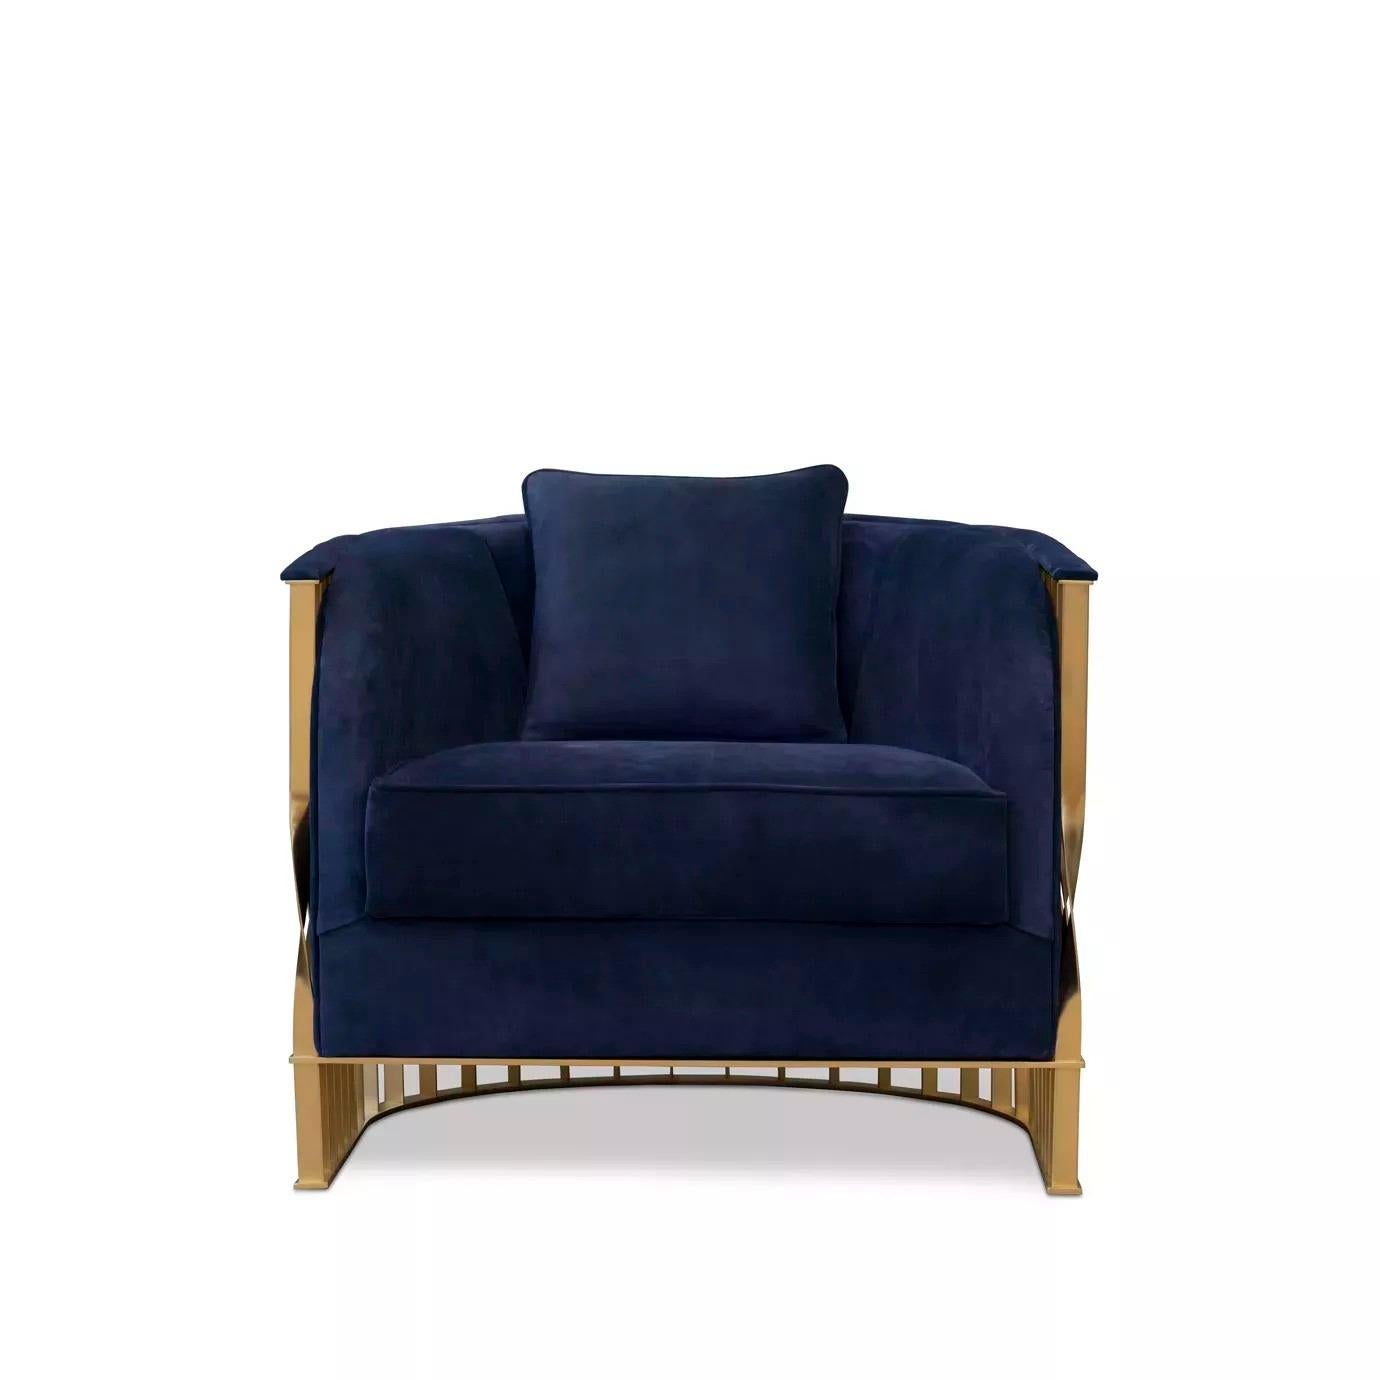 Dieser fließende und ungewöhnliche Stuhl geht über Design und Schmuck hinaus. Der Sessel Mandy, der aus einem Manschettenarmband entstanden ist, verschönert mit seiner weichen Polsterung und einem Gestell aus gedrehtem, hochglänzendem Metall jedes